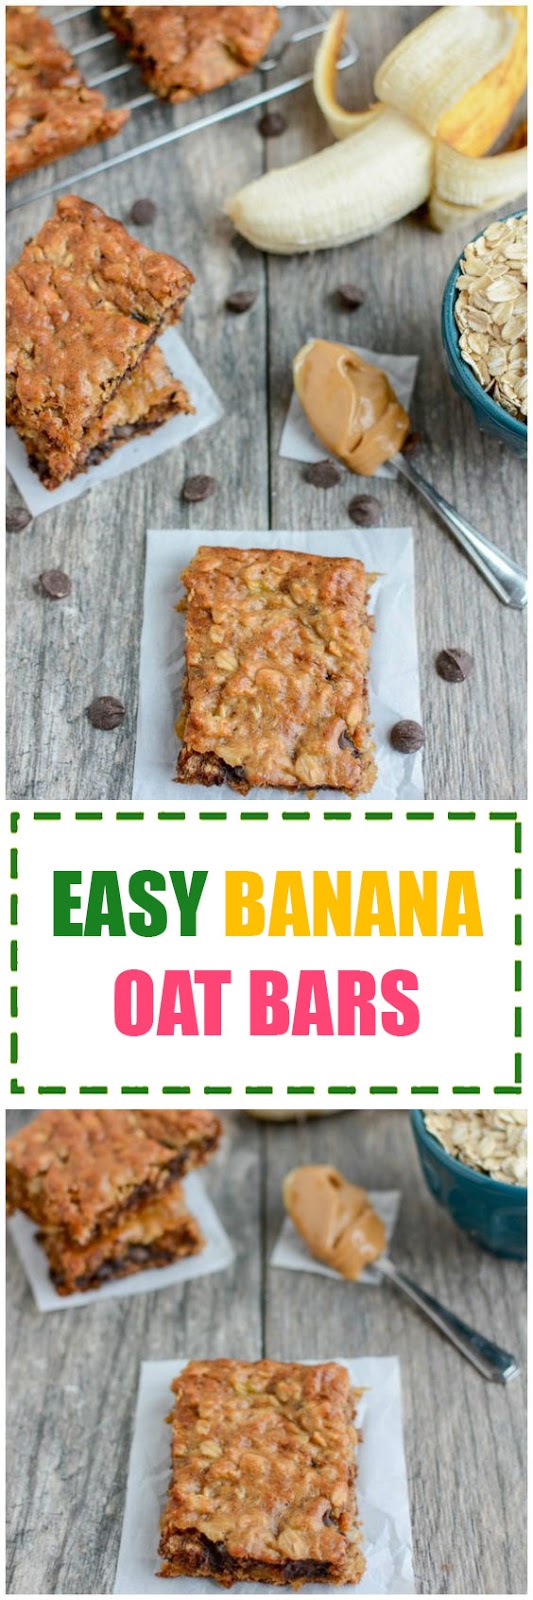 Easy Banana Oat Bars